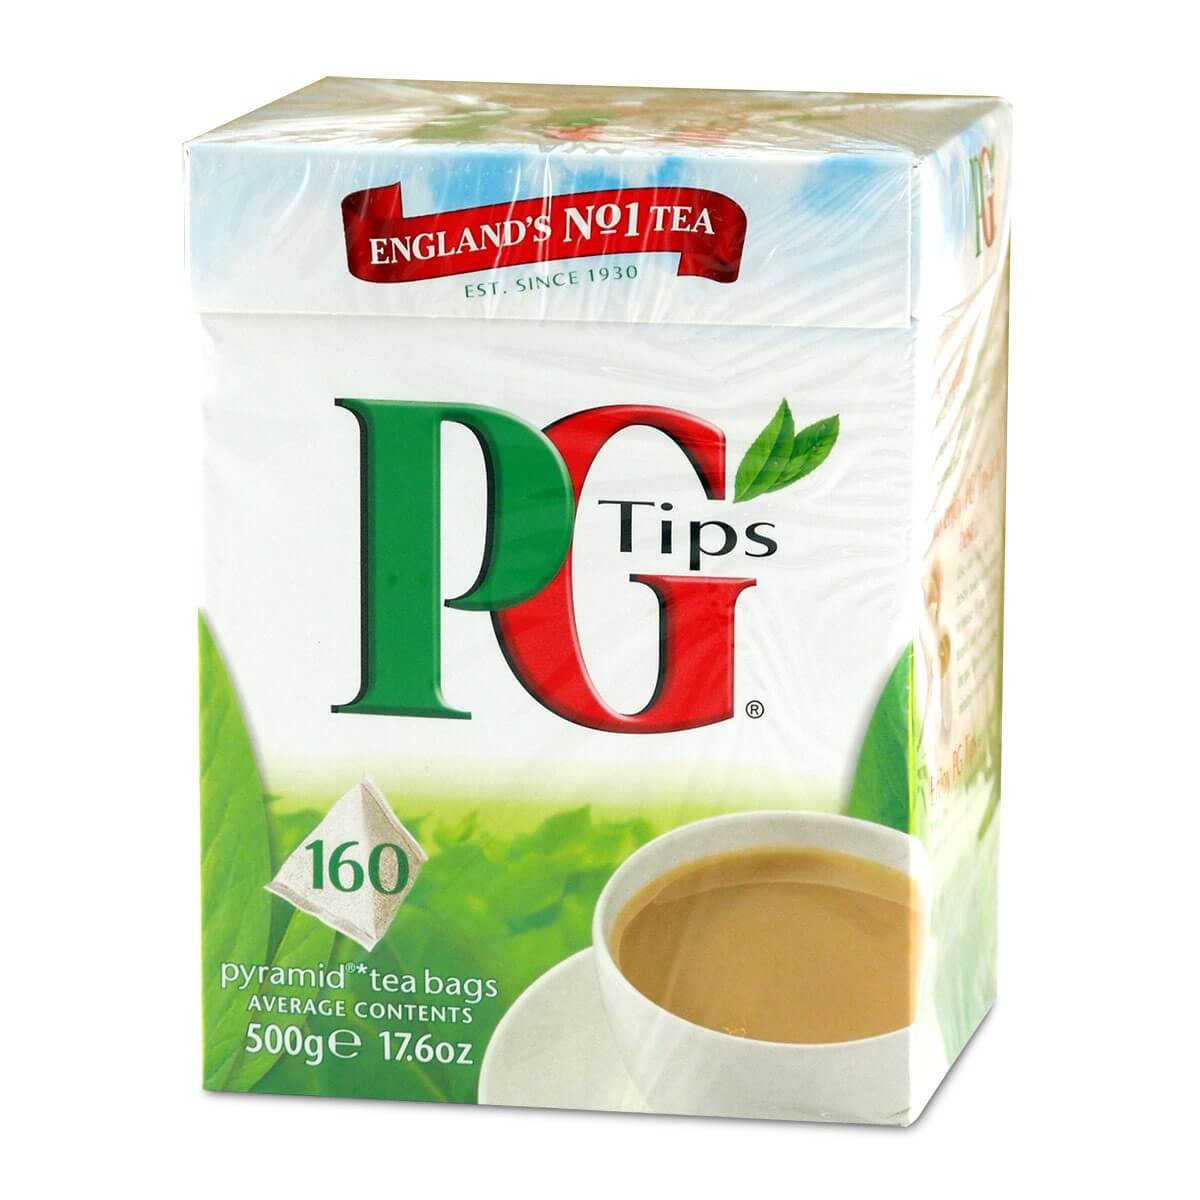 PG Tips Tea Bags 160st 500g